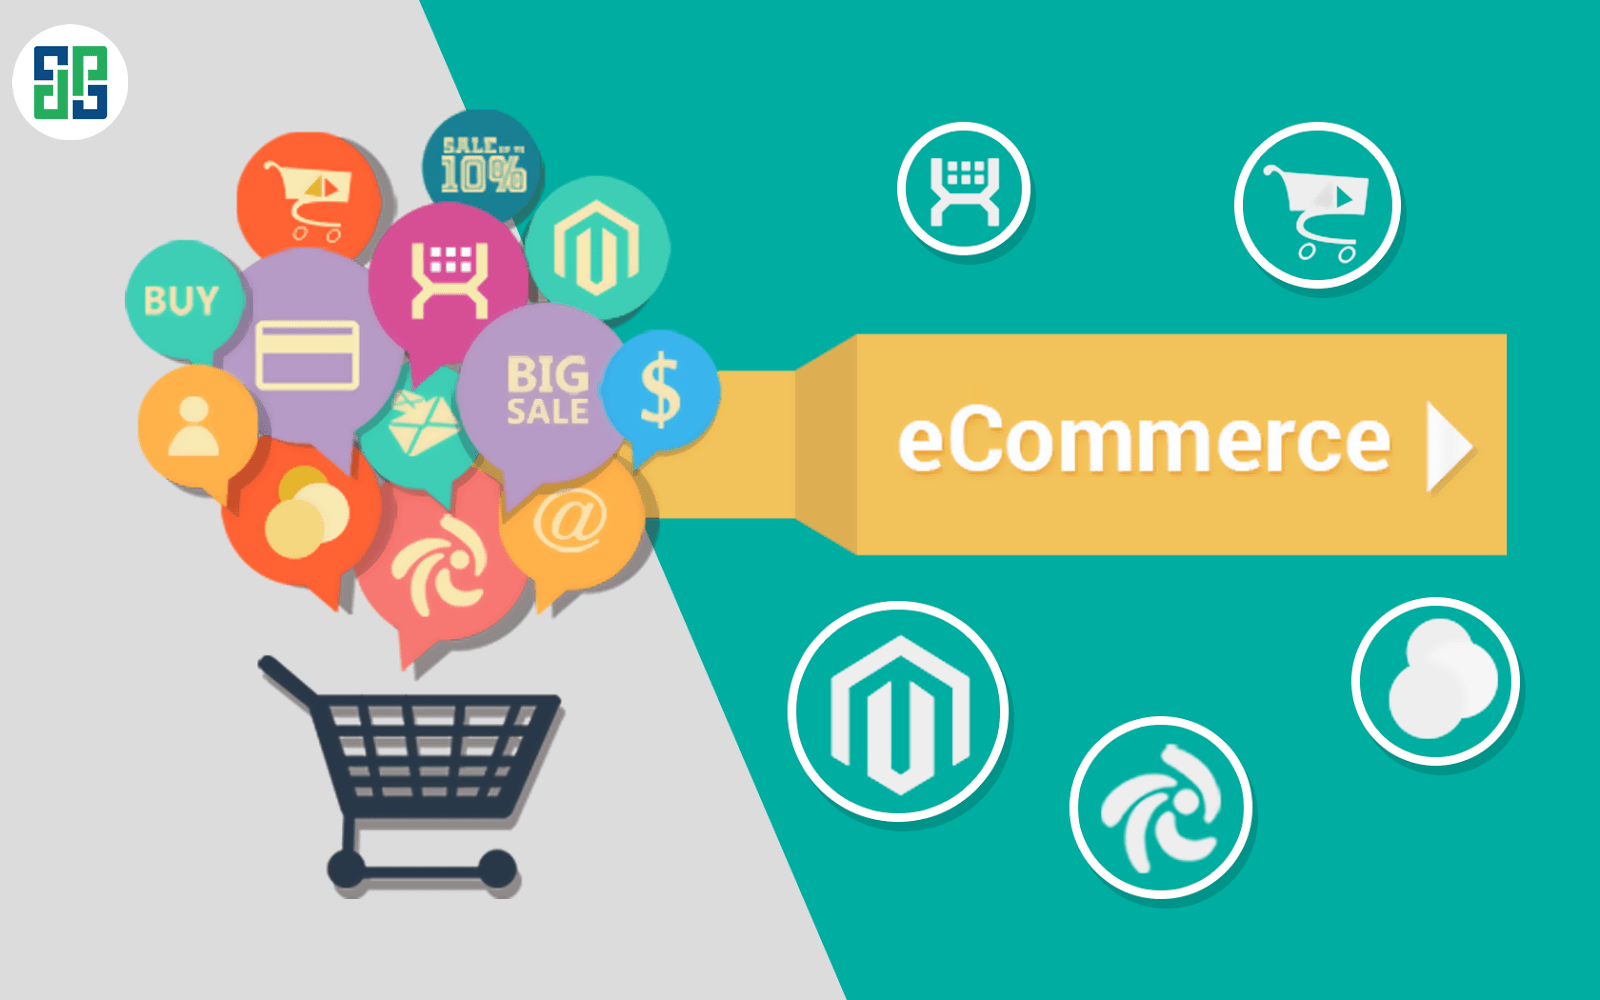 Regulations on registration of e-commerce platforms